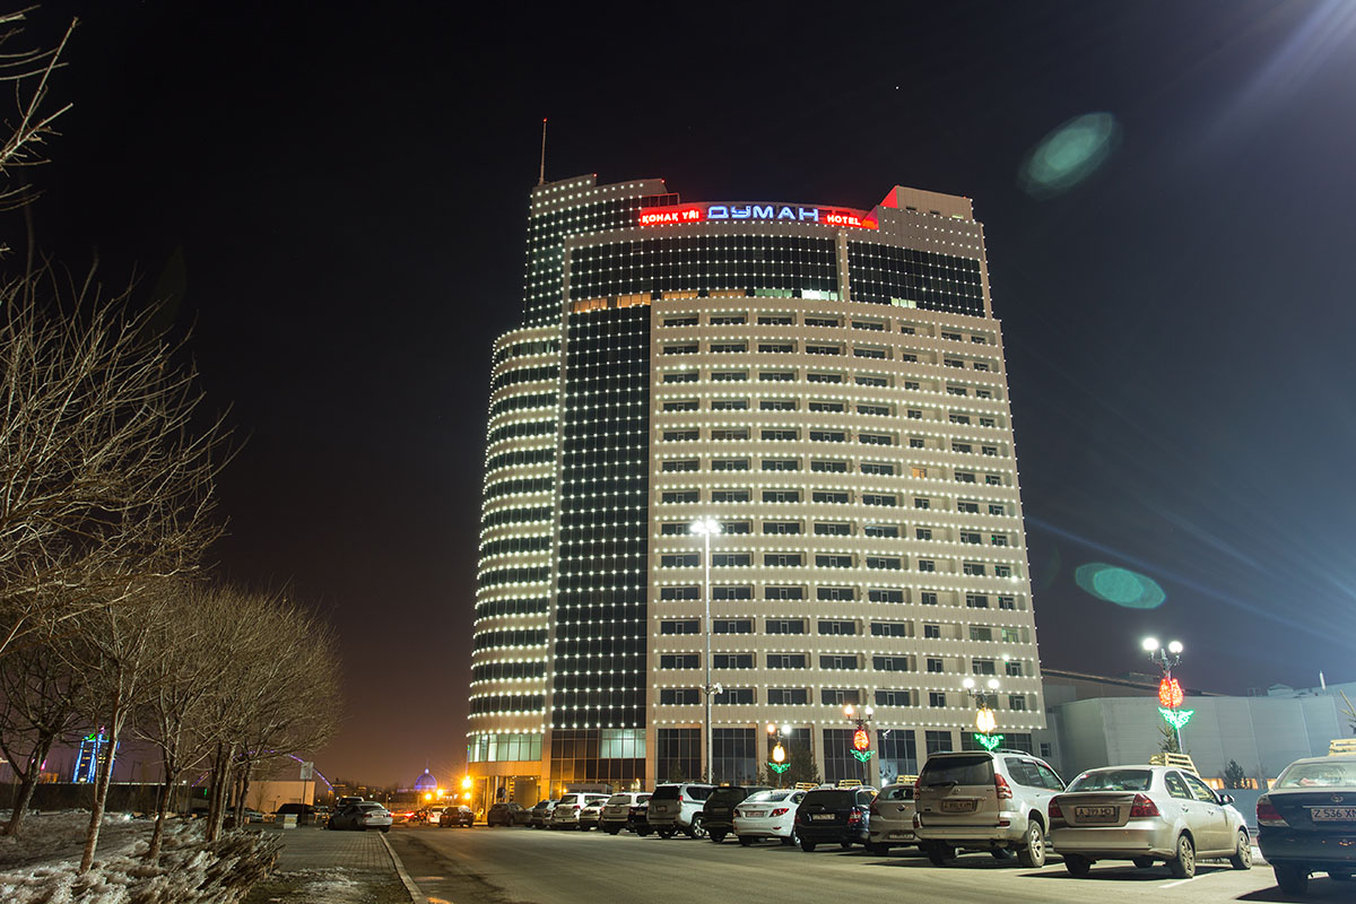 Hotel "Duman" image